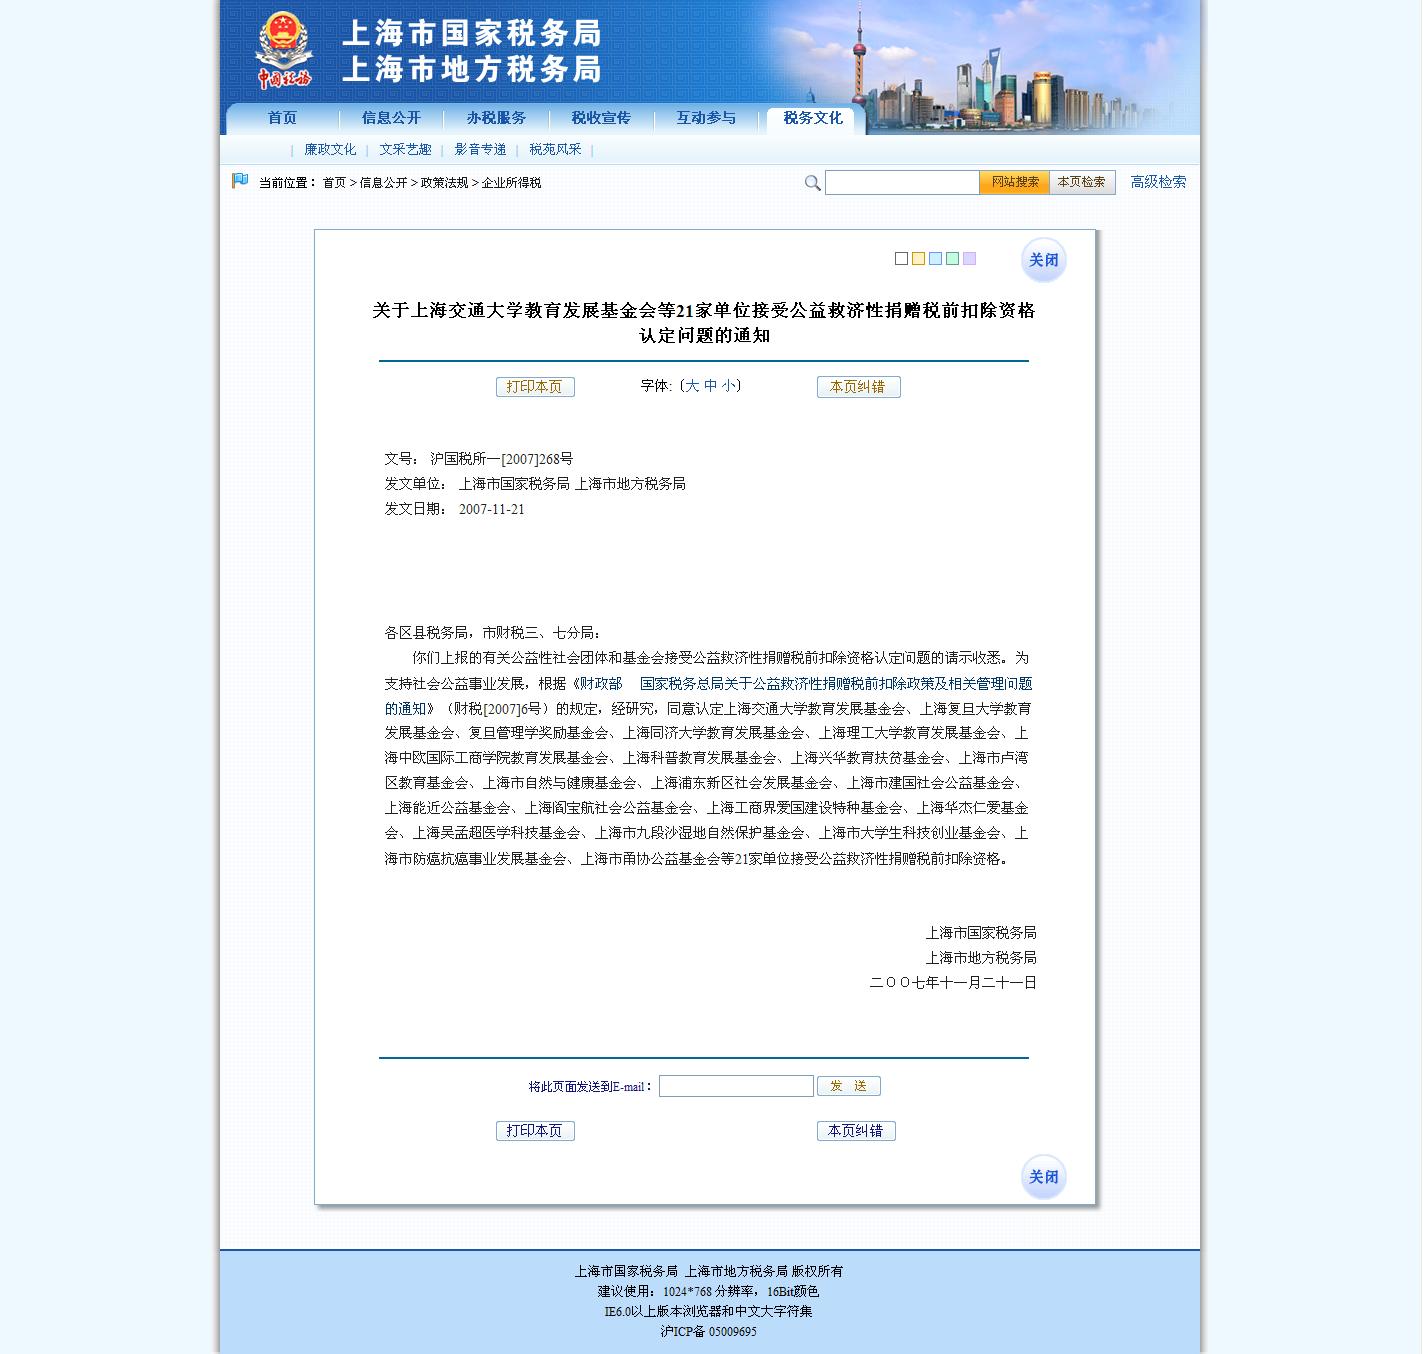 关于上海交通大学教育发展基金会等21家单位接受公益救济性捐赠税前扣除资格认定问题的通知